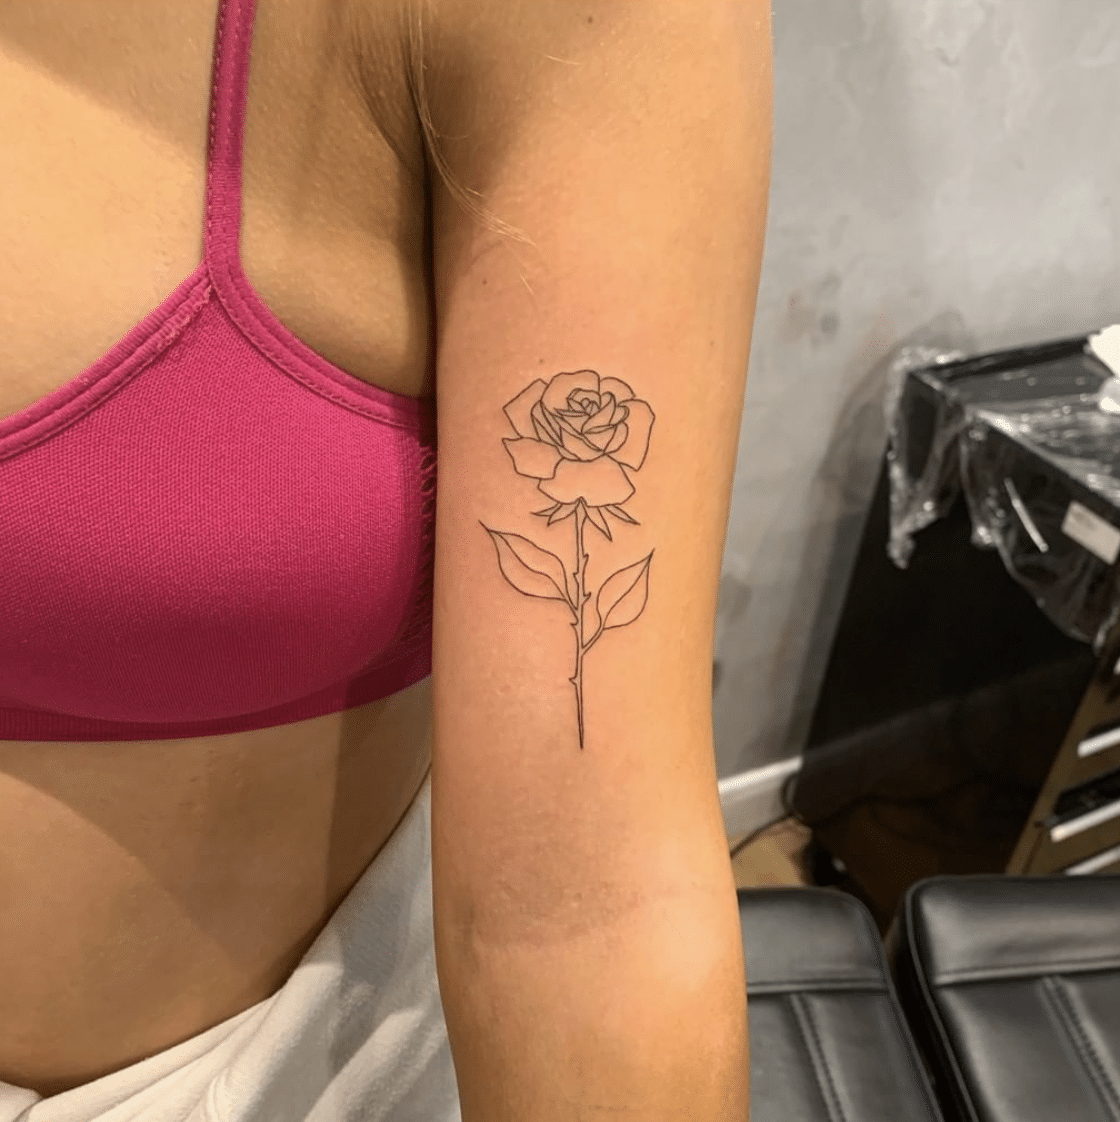 Time heals tattoo under bra strap | Time heals tattoo, Subtle tattoos,  Tattoos